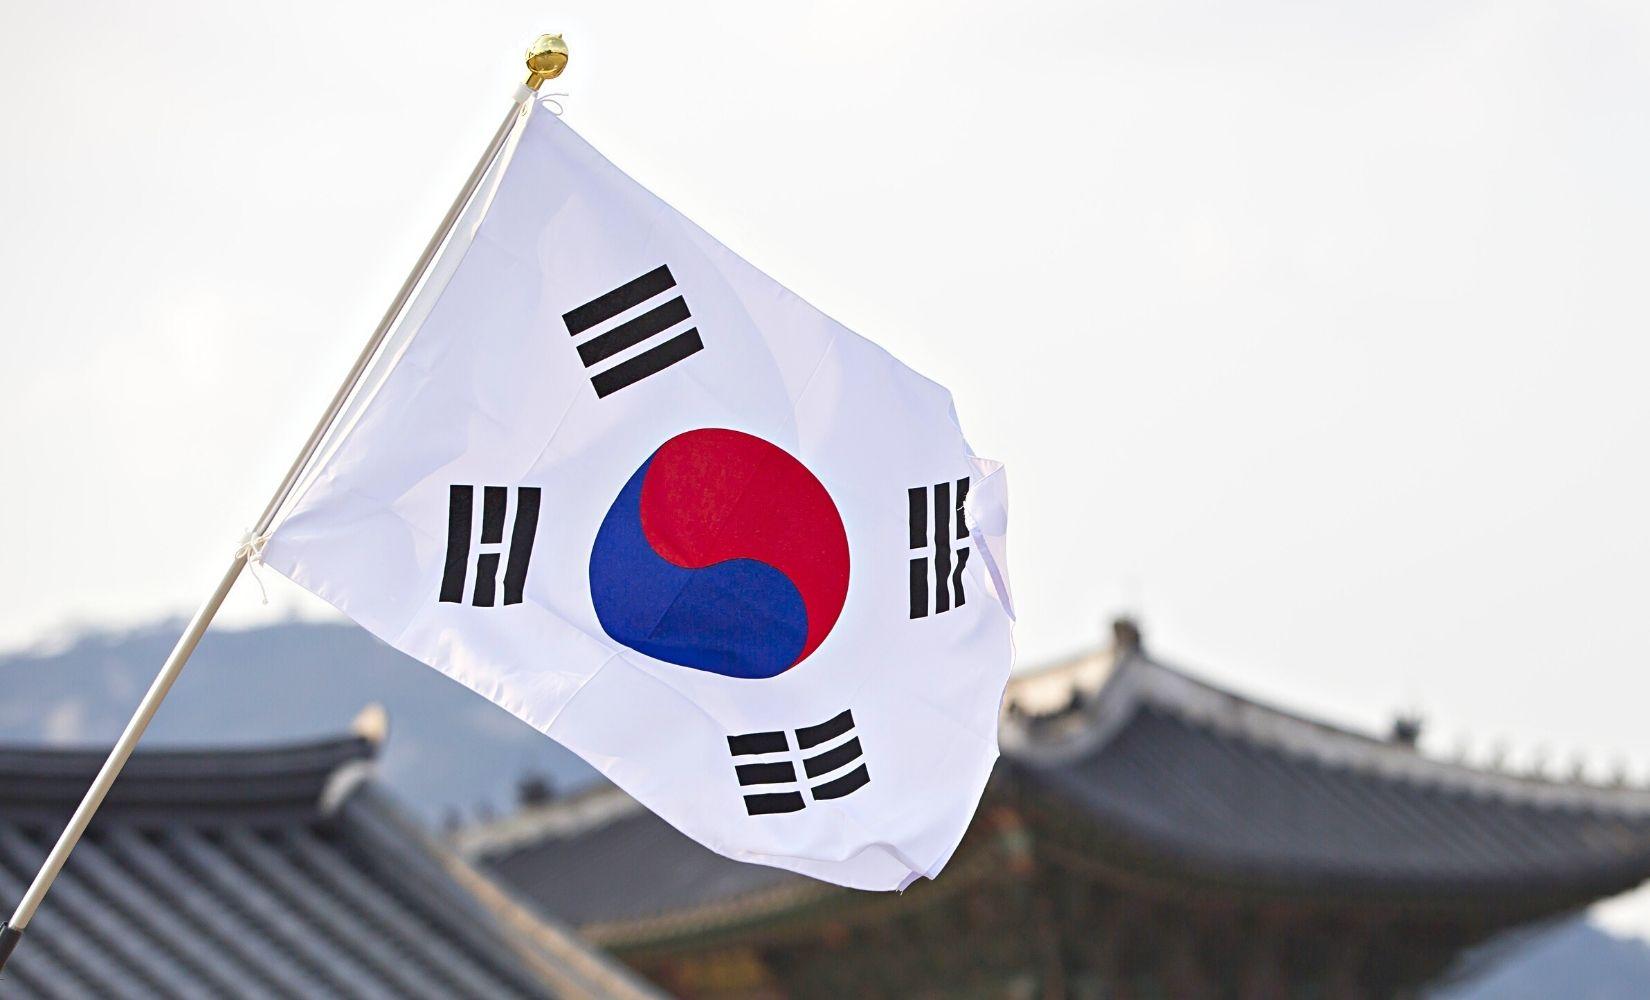 Taegeukgi năm 2024 là một trong những kỷ niệm quan trọng của đất nước Hàn Quốc, và đang chờ đón bạn. Hãy cùng Creatrip khám phá hòn đảo của Taegeukgi, tham gia các hoạt động văn hóa và lễ hội đặc sắc, và trải nghiệm những nét độc đáo của văn hóa Hàn Quốc.